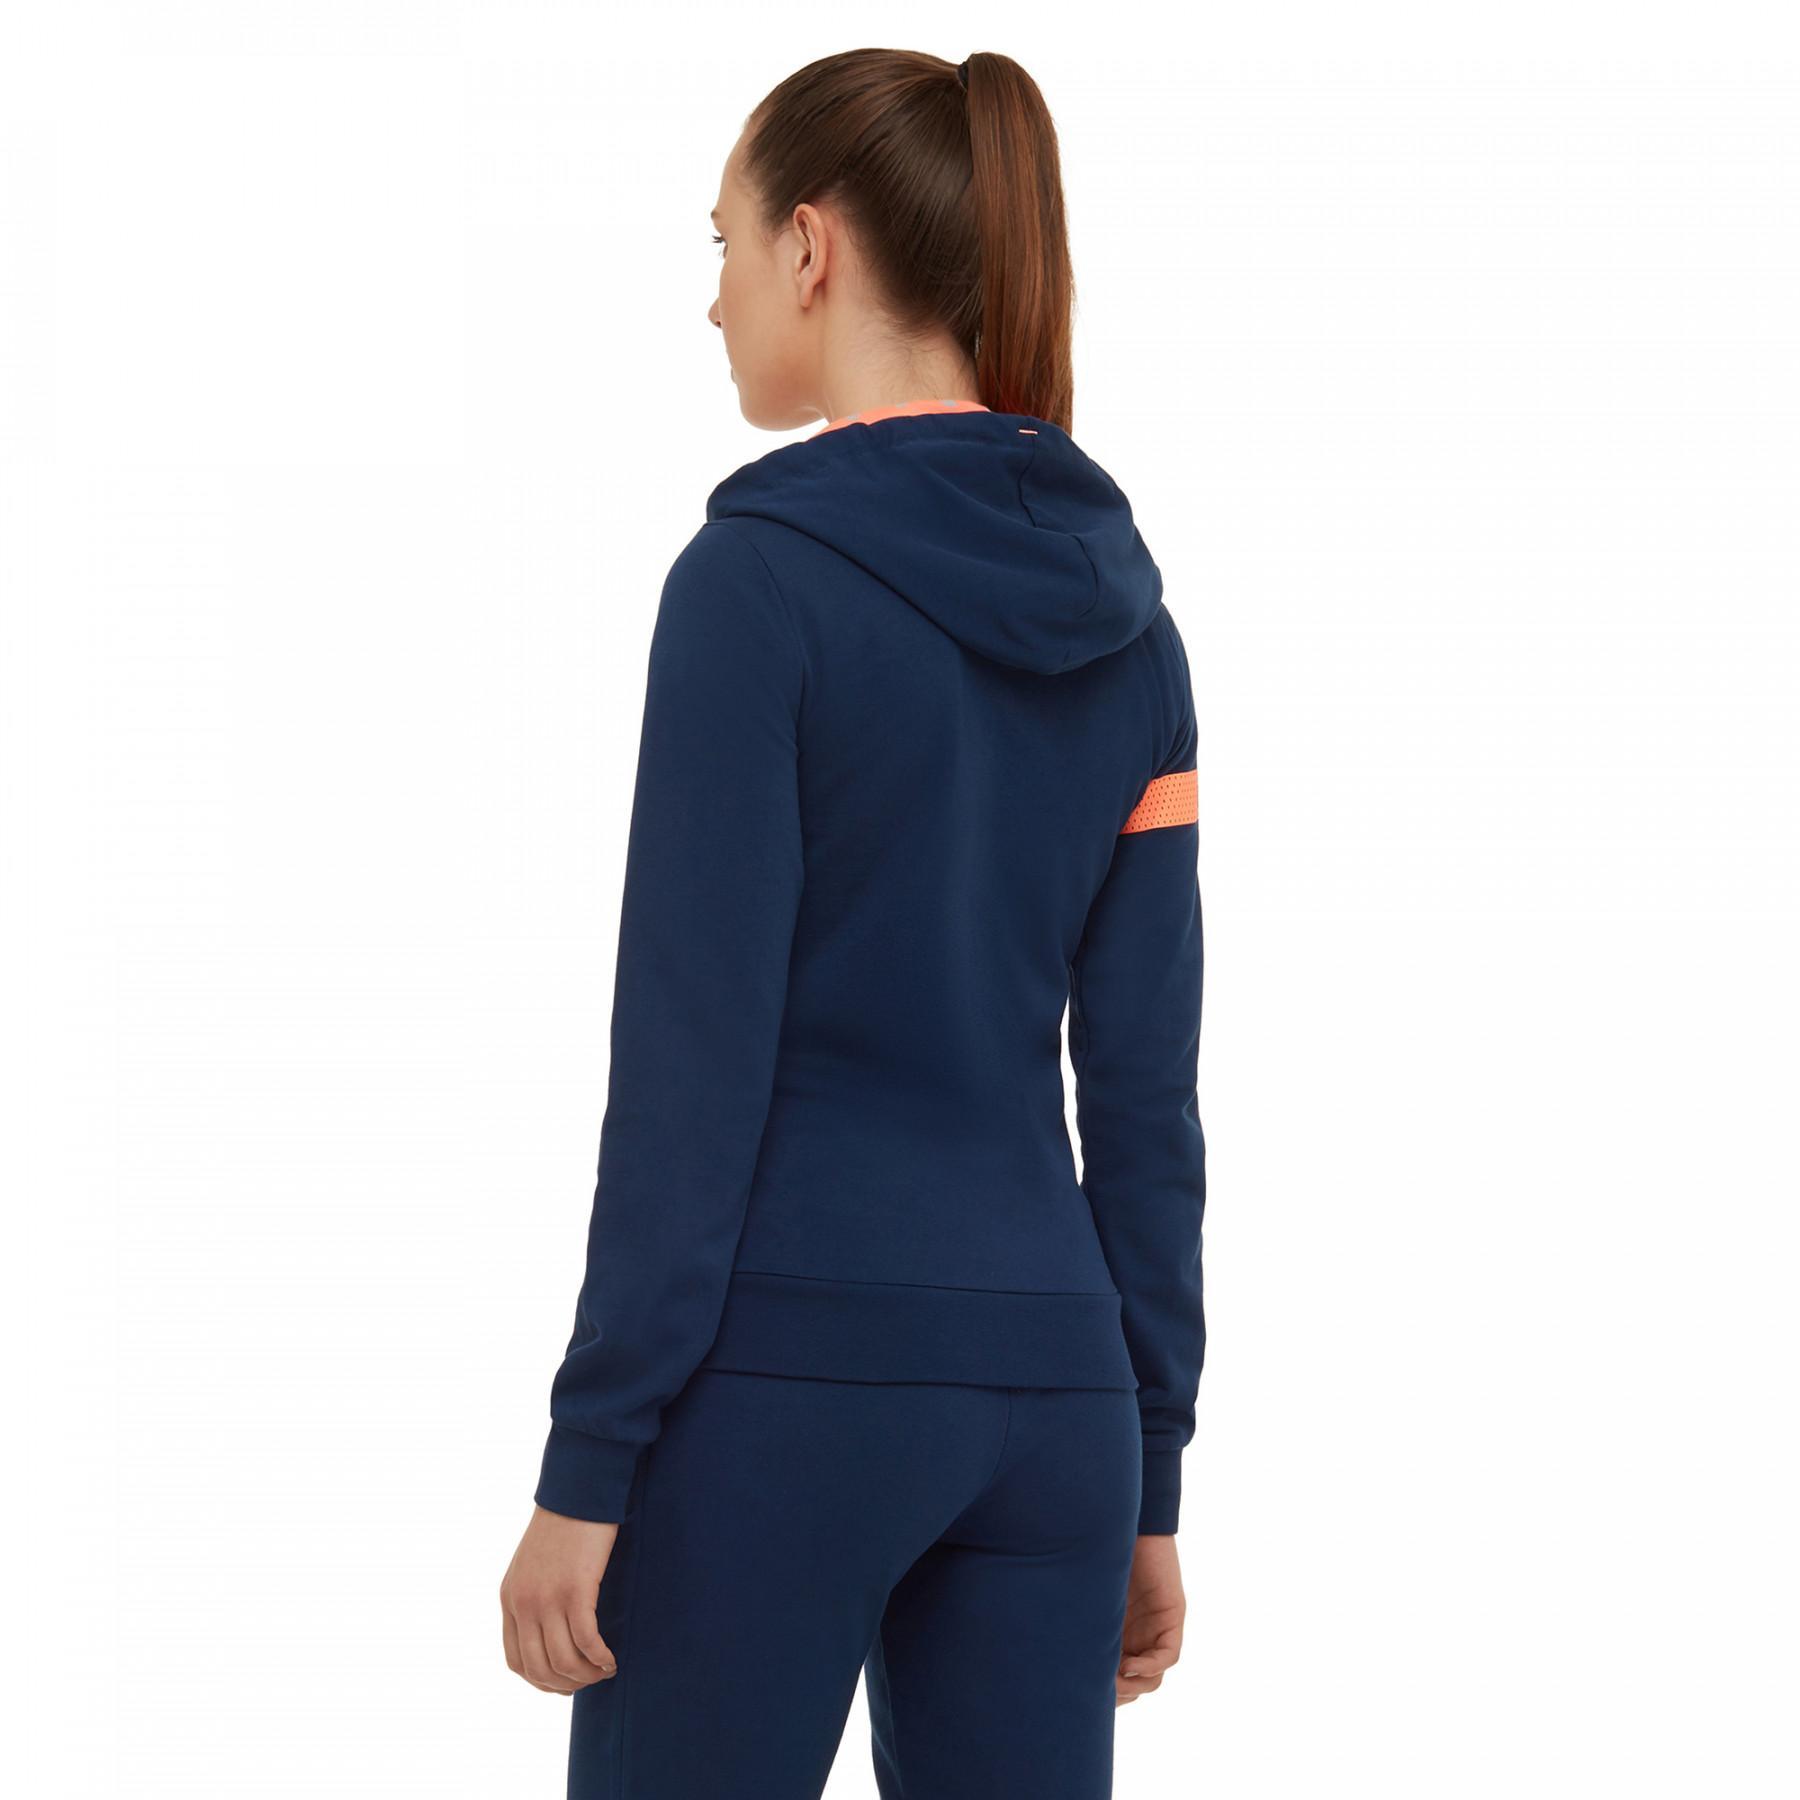 Women's zip-up sweatshirt Macron sportswear sofia